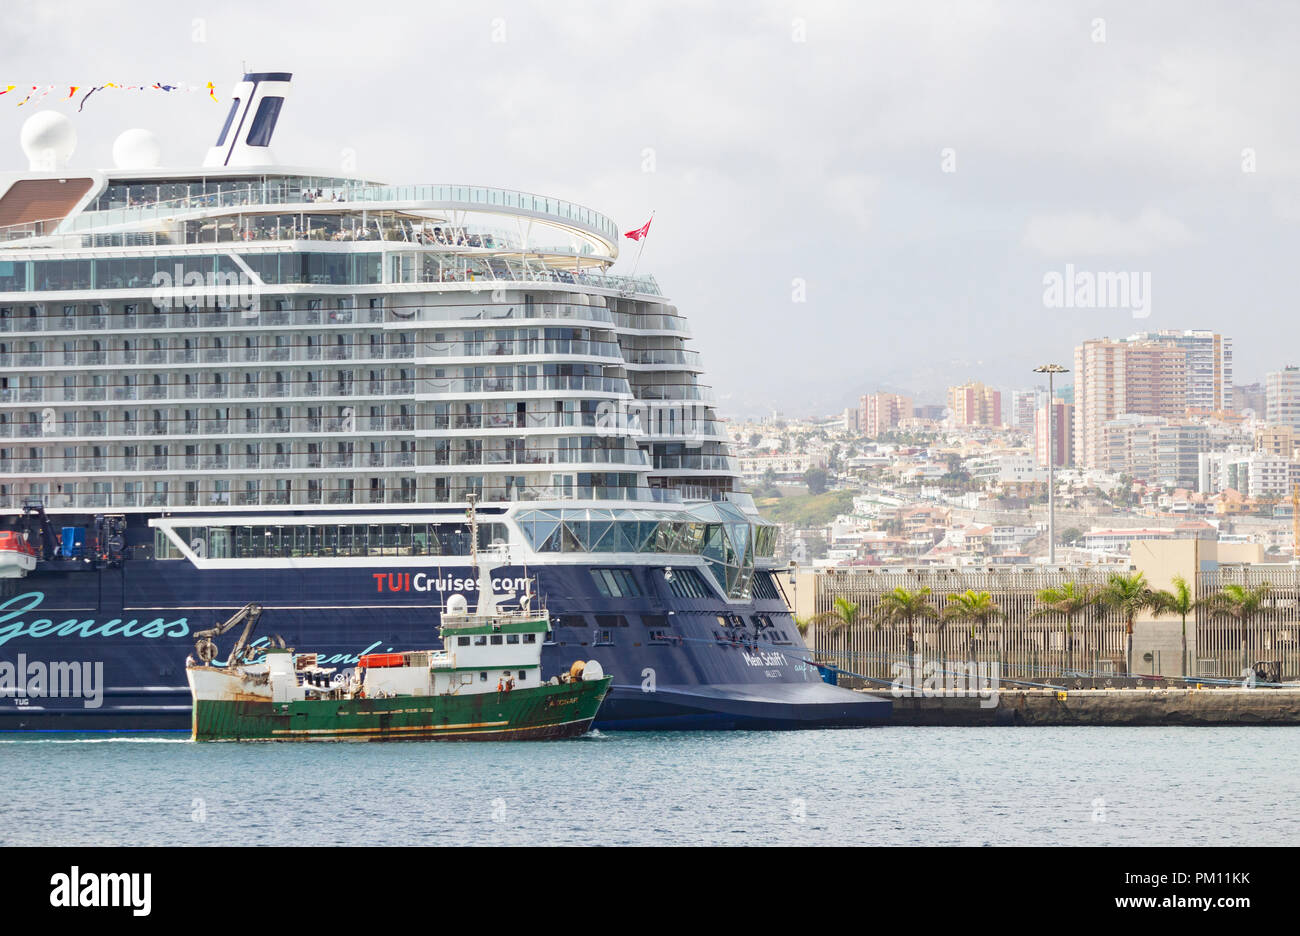 Las Palmas, Gran Canaria, Kanarische Inseln, Spanien. 16.September 2018. Mein  Schiff 1, eine neue, high tech 315 Meter lange Schiff in TUI Cruises  Flotte, ragt über Schiffe und Gebäude im Hafen von